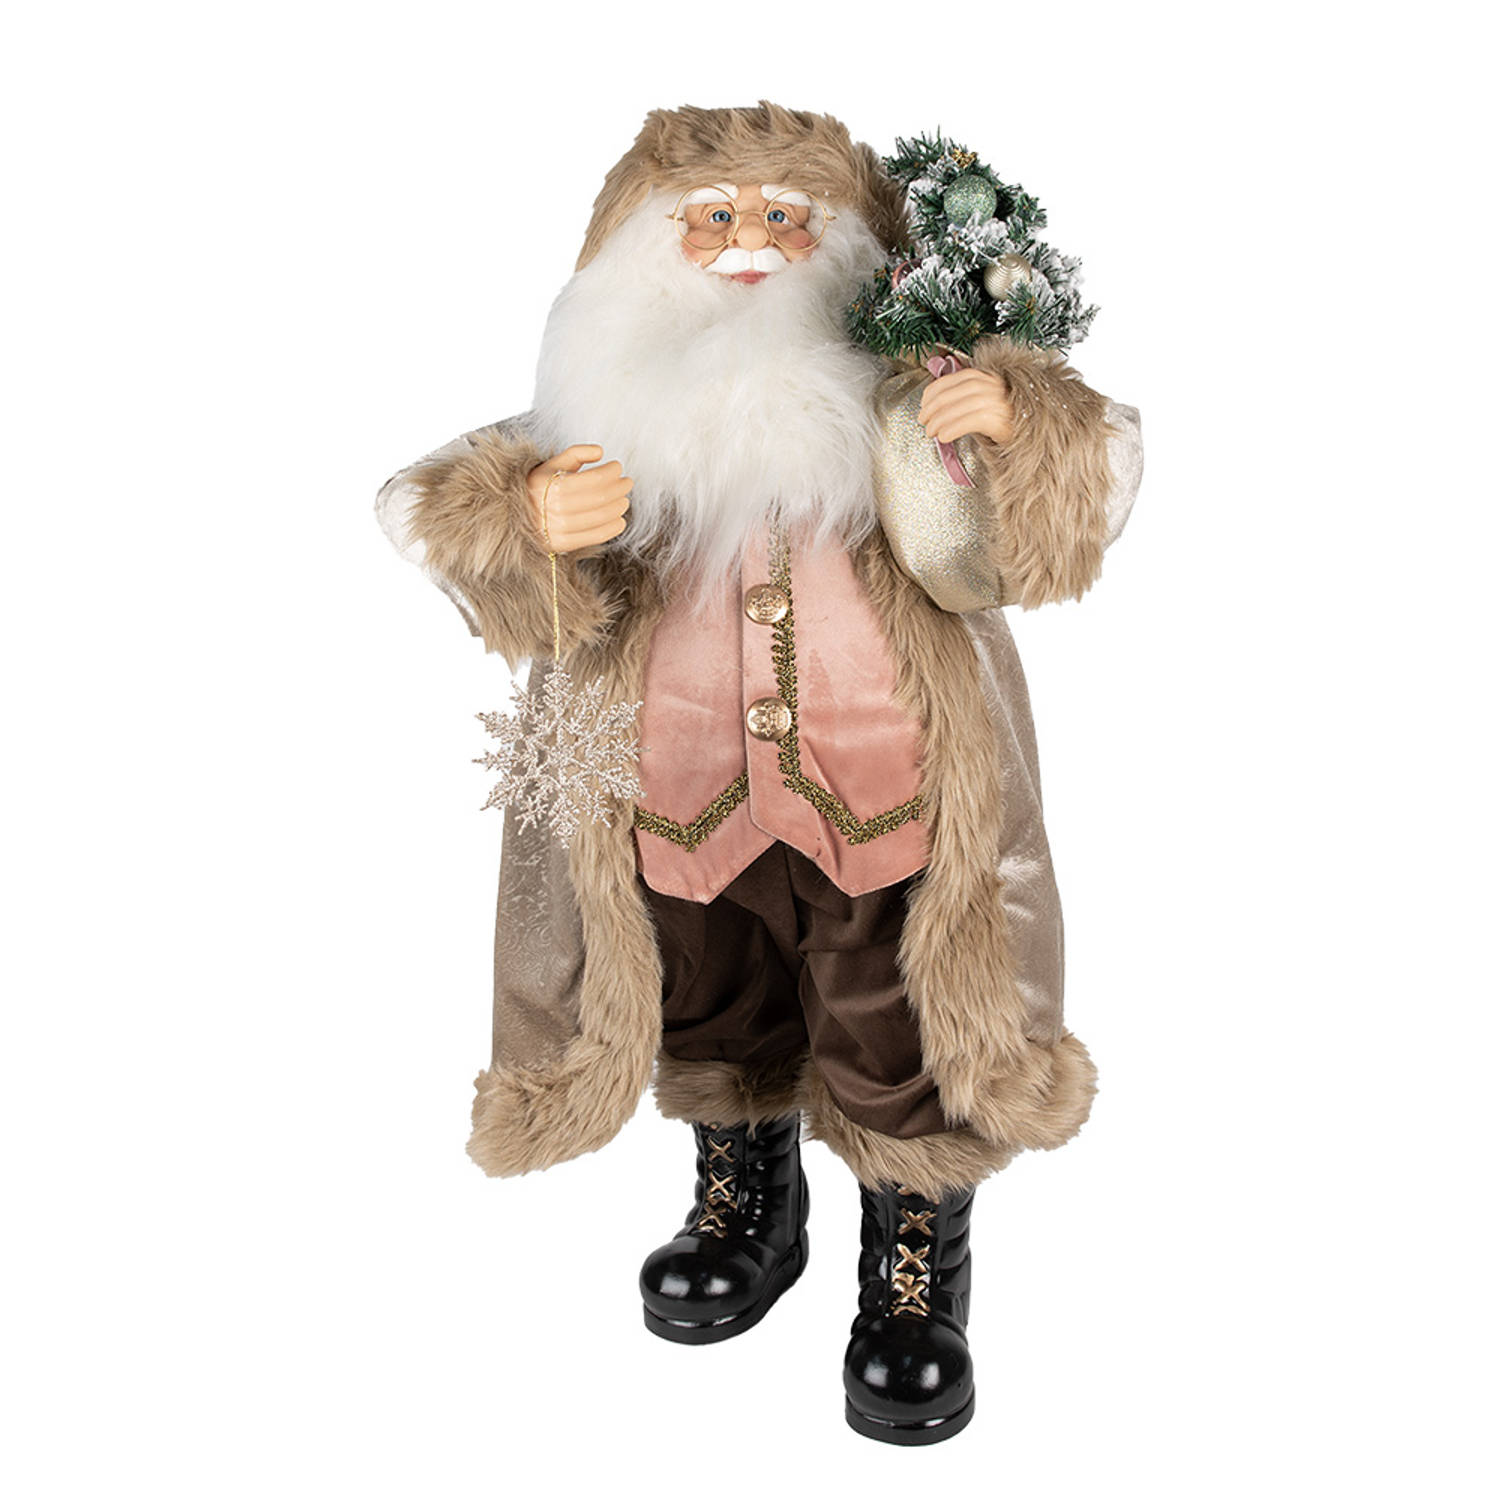 HAES DECO - Kerstman deco Figuur - Formaat 26x16x47 cm - Collectie: Traditional Santa - Kleur Beige - Materiaal Textiel op kunststof - Kerst Figuur, Kerstdecoratie